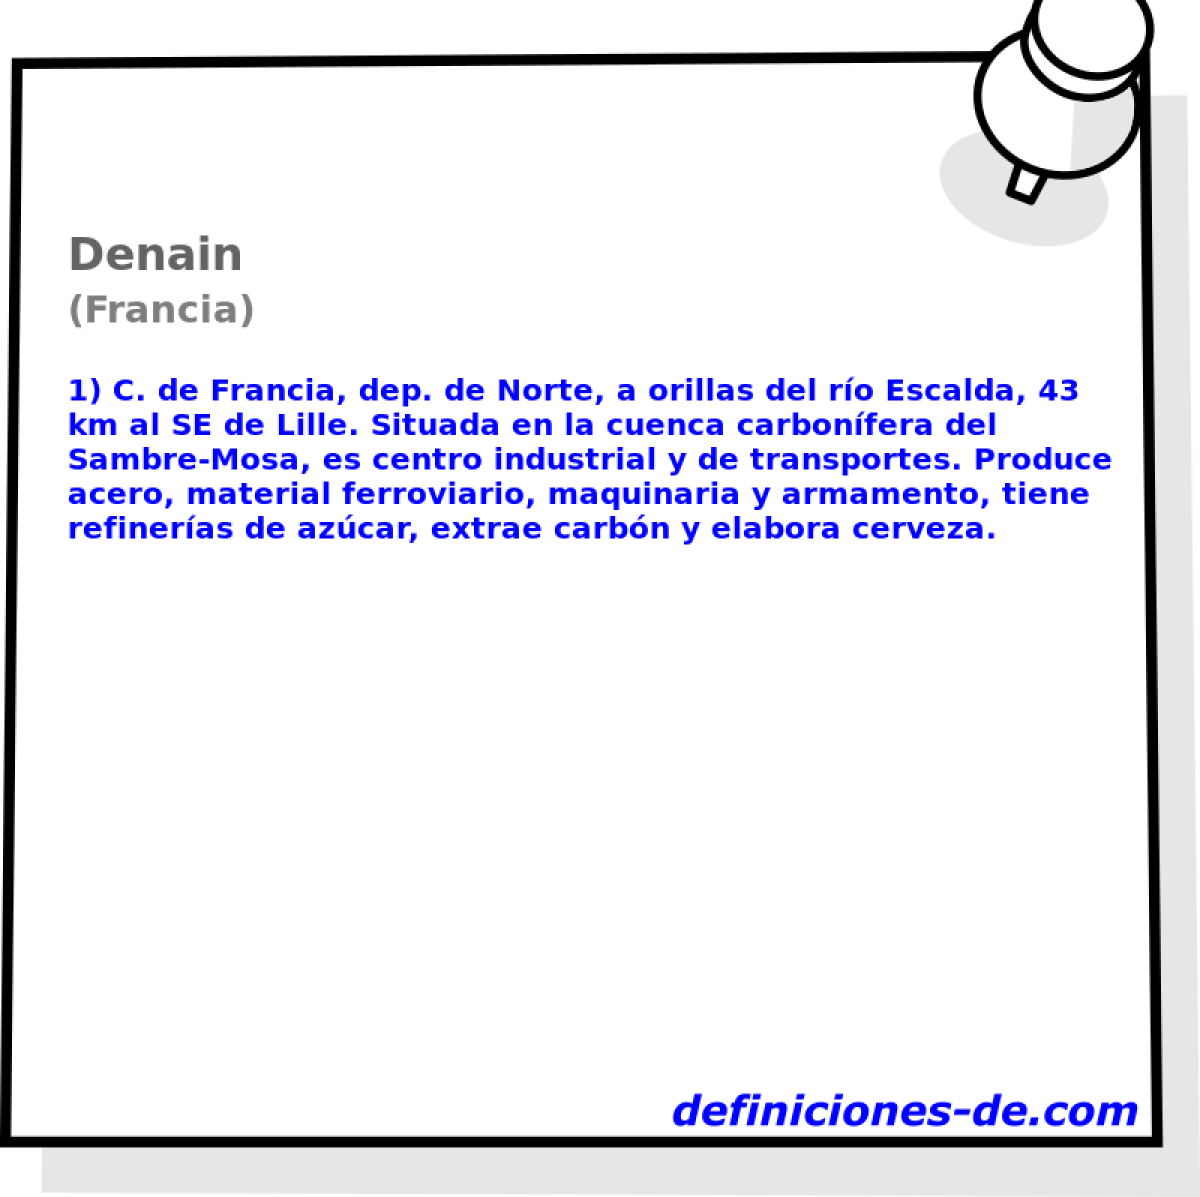 Denain (Francia)